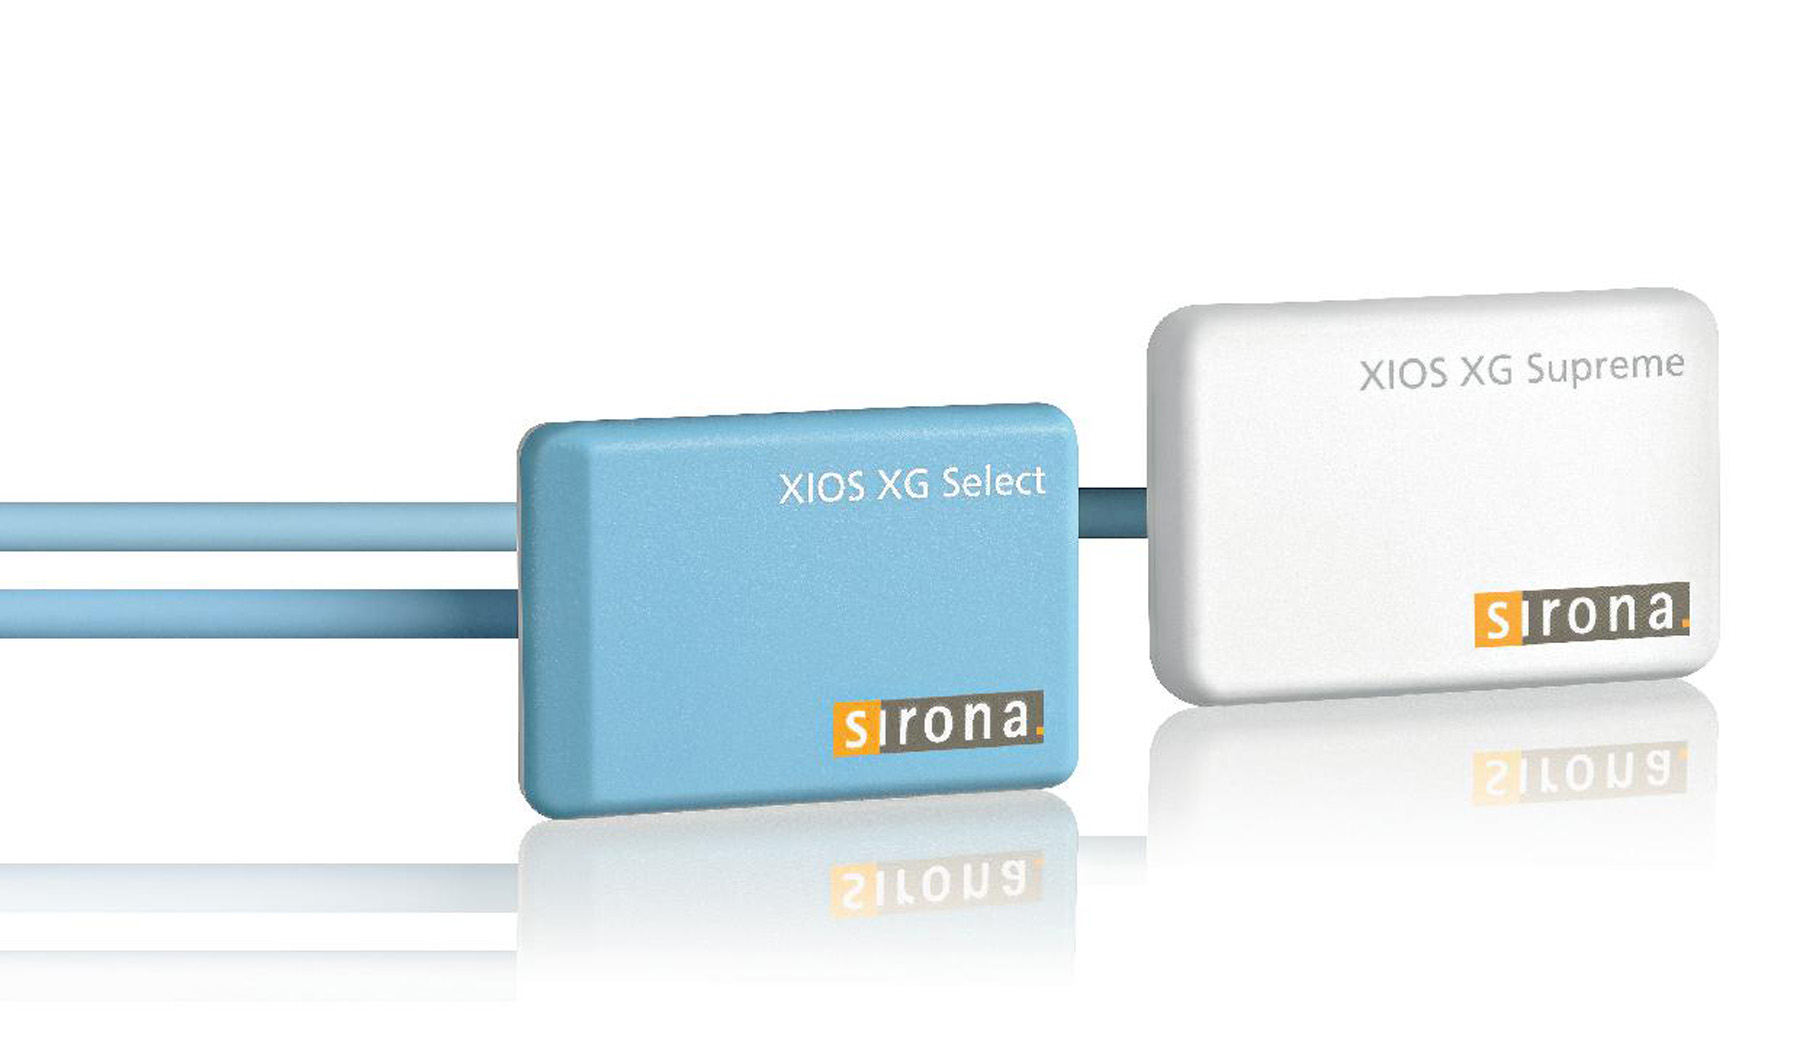 XIOS XG Supreme WiFi module with sensor size 1